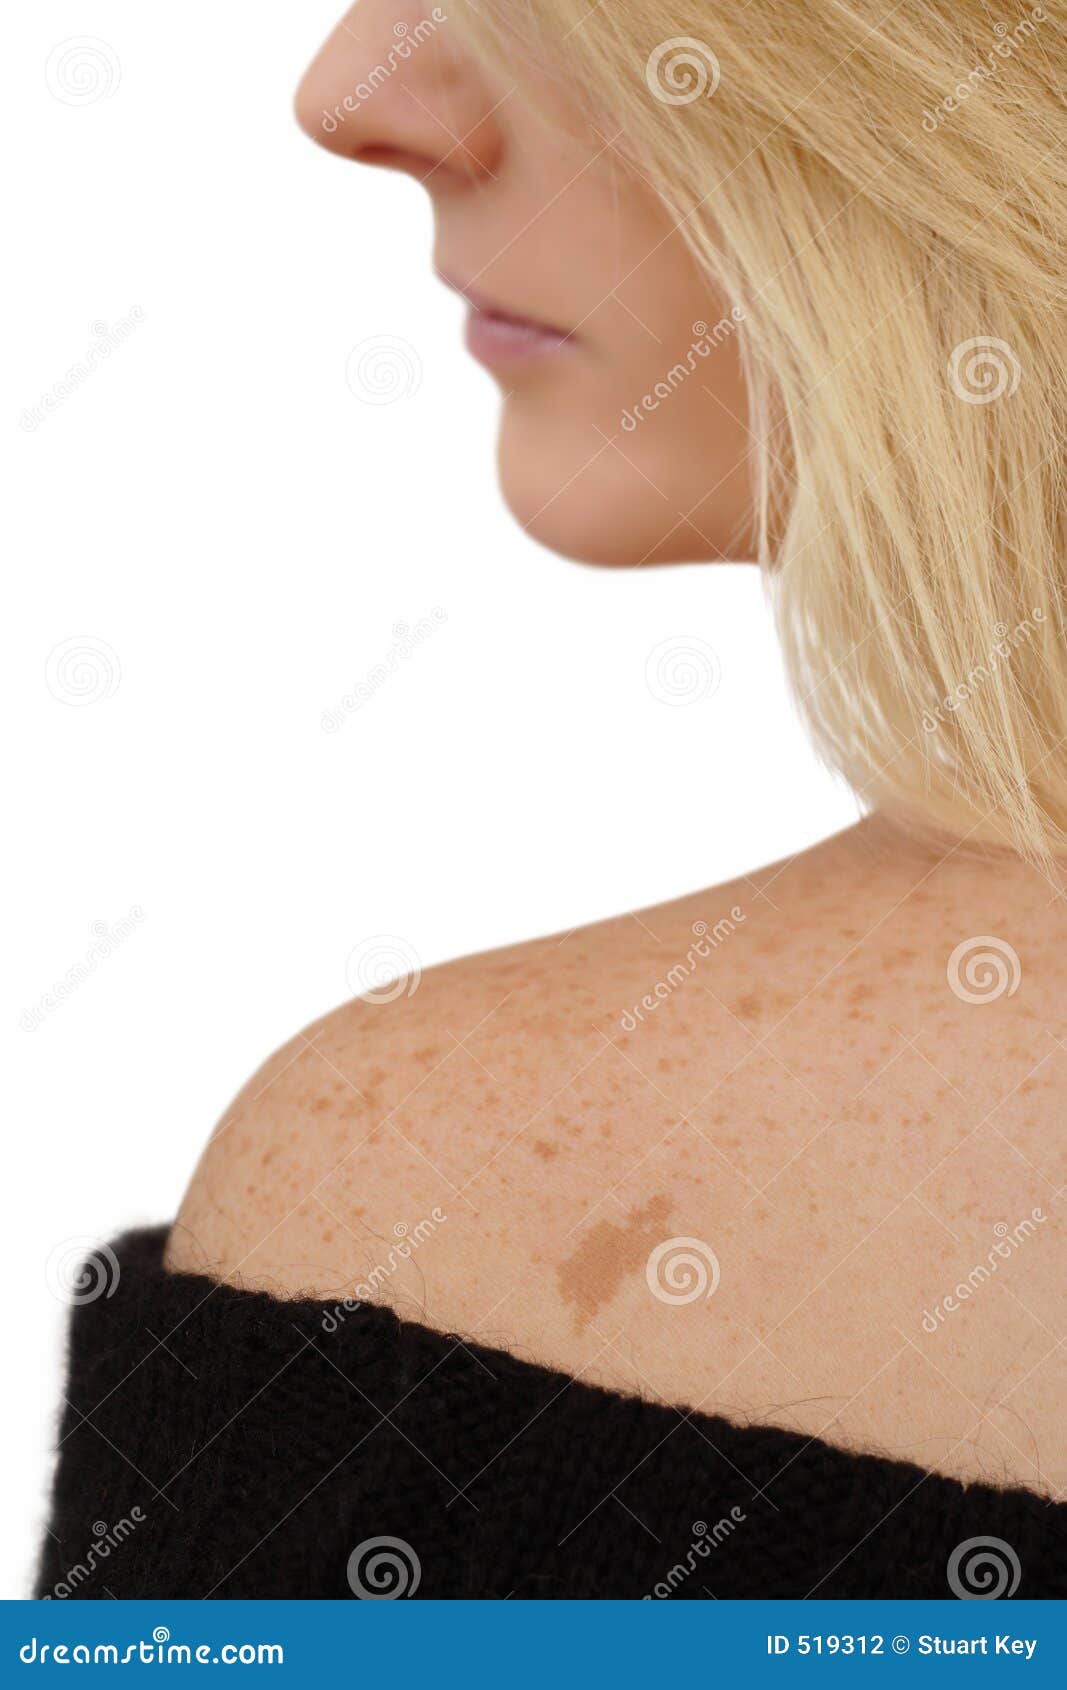 freckles & birth mark